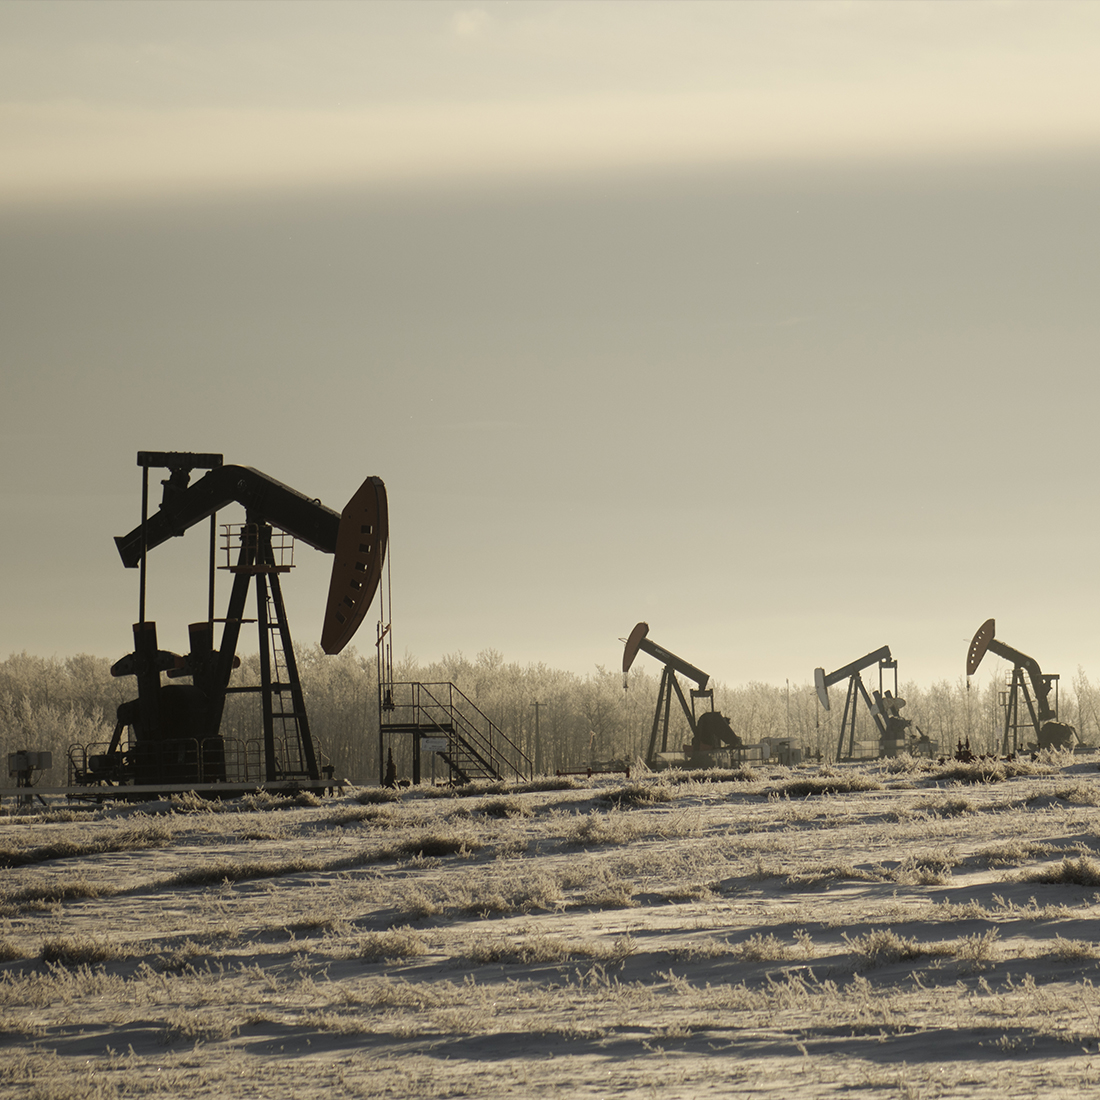 El Precio del Petróleo está en una Situación Crítica después de haber experimentado su mayor caída en cuatro meses